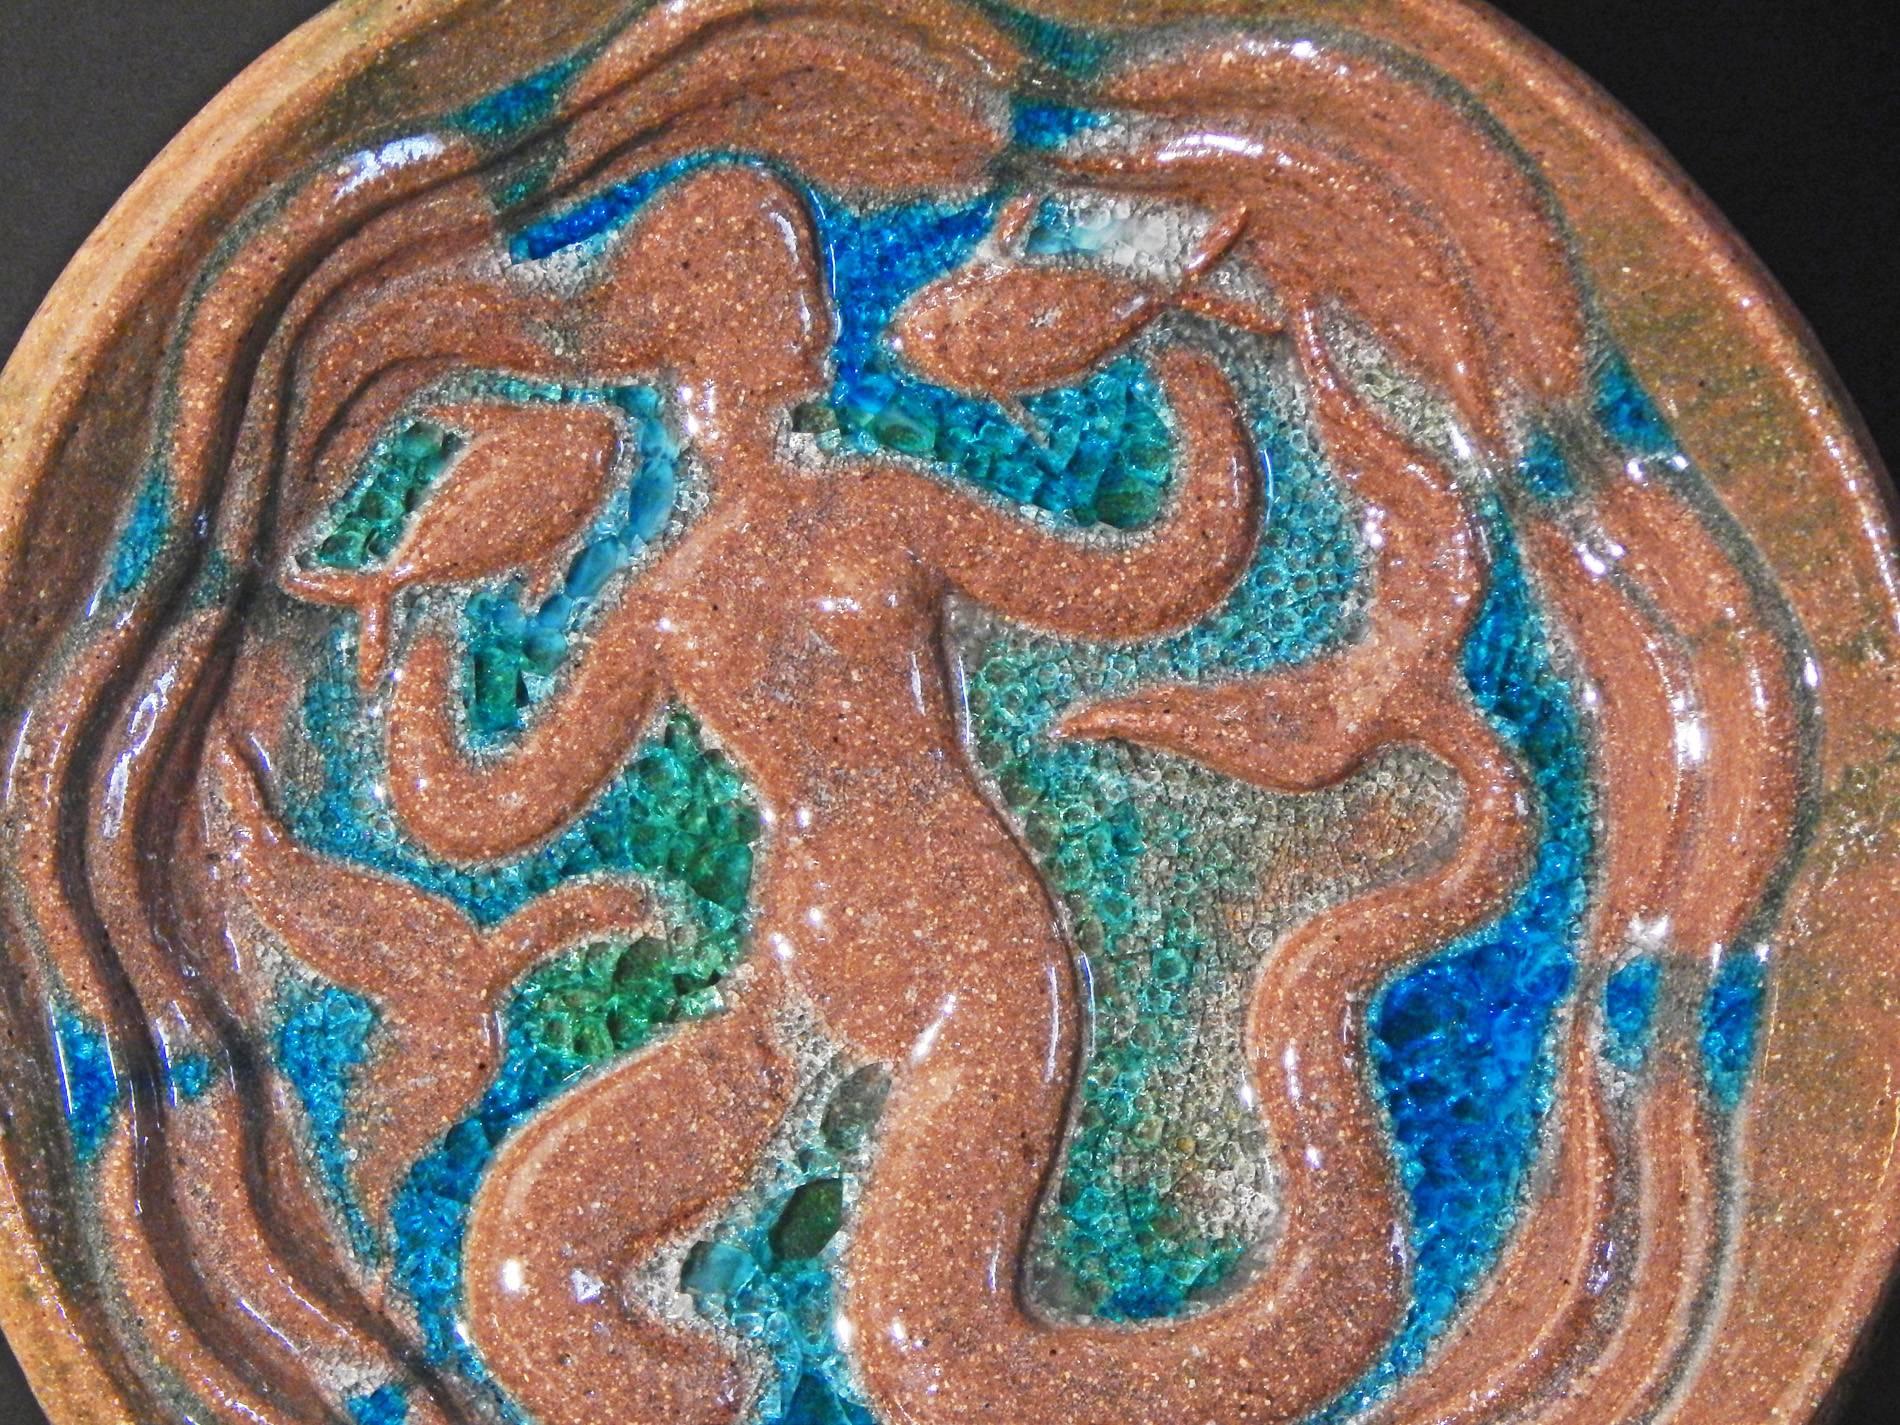 Créé par l'un des plus importants sculpteurs américains de la période Art déco, ce grand et lourd bol sculptural de Waylande Gregory représente une sirène tenant un poisson dans chaque main, entourée des bleus et verts brillants de la mer. Gregory